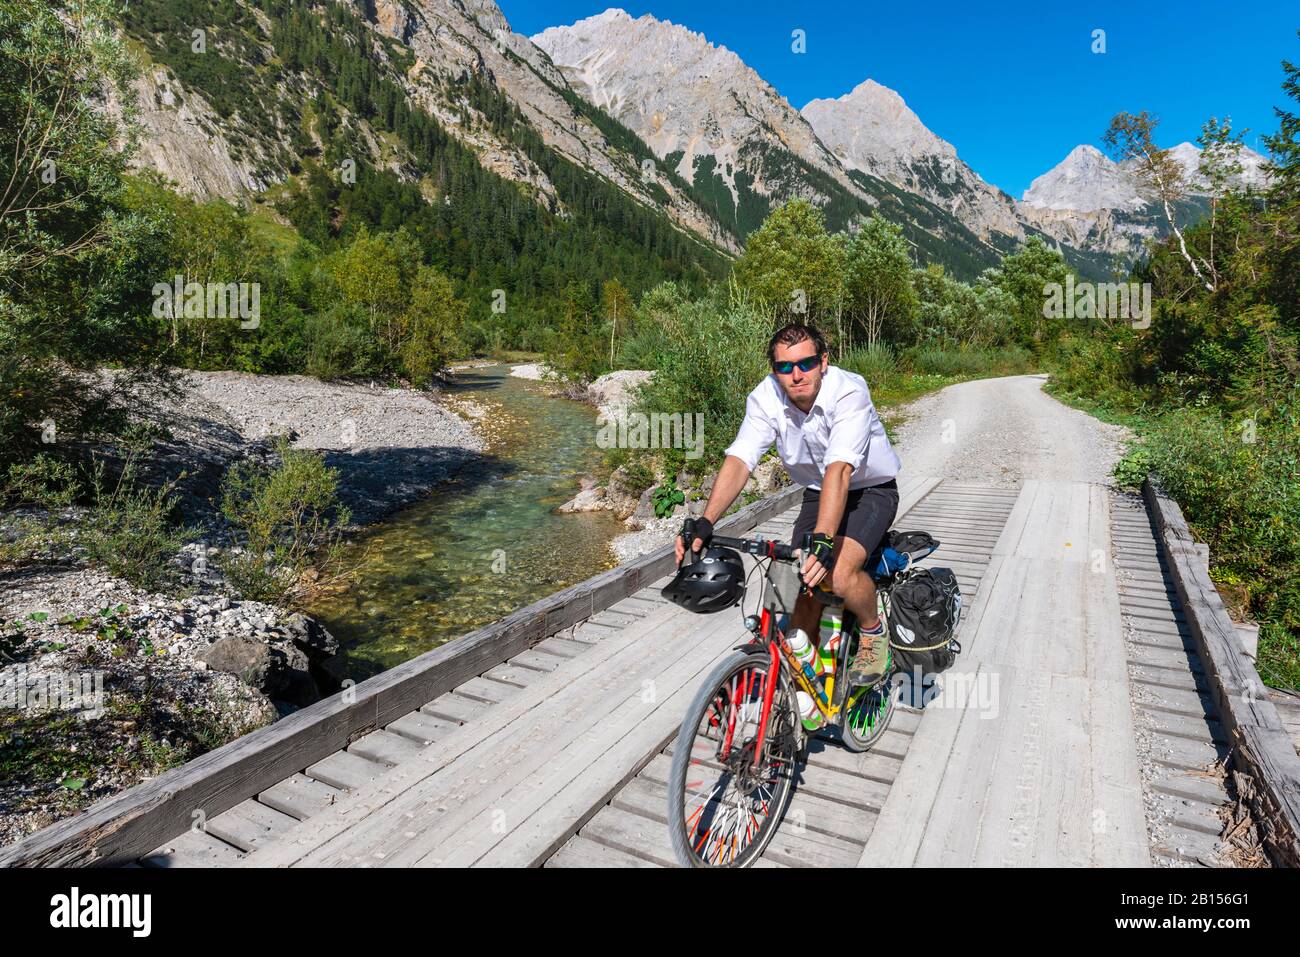 Cycliste cycliste, VTT sur le pont au-dessus du ruisseau de montagne, chemin de gravier à Karwendelhaus, vallée de Karwendel, Tyrol, Autriche Banque D'Images